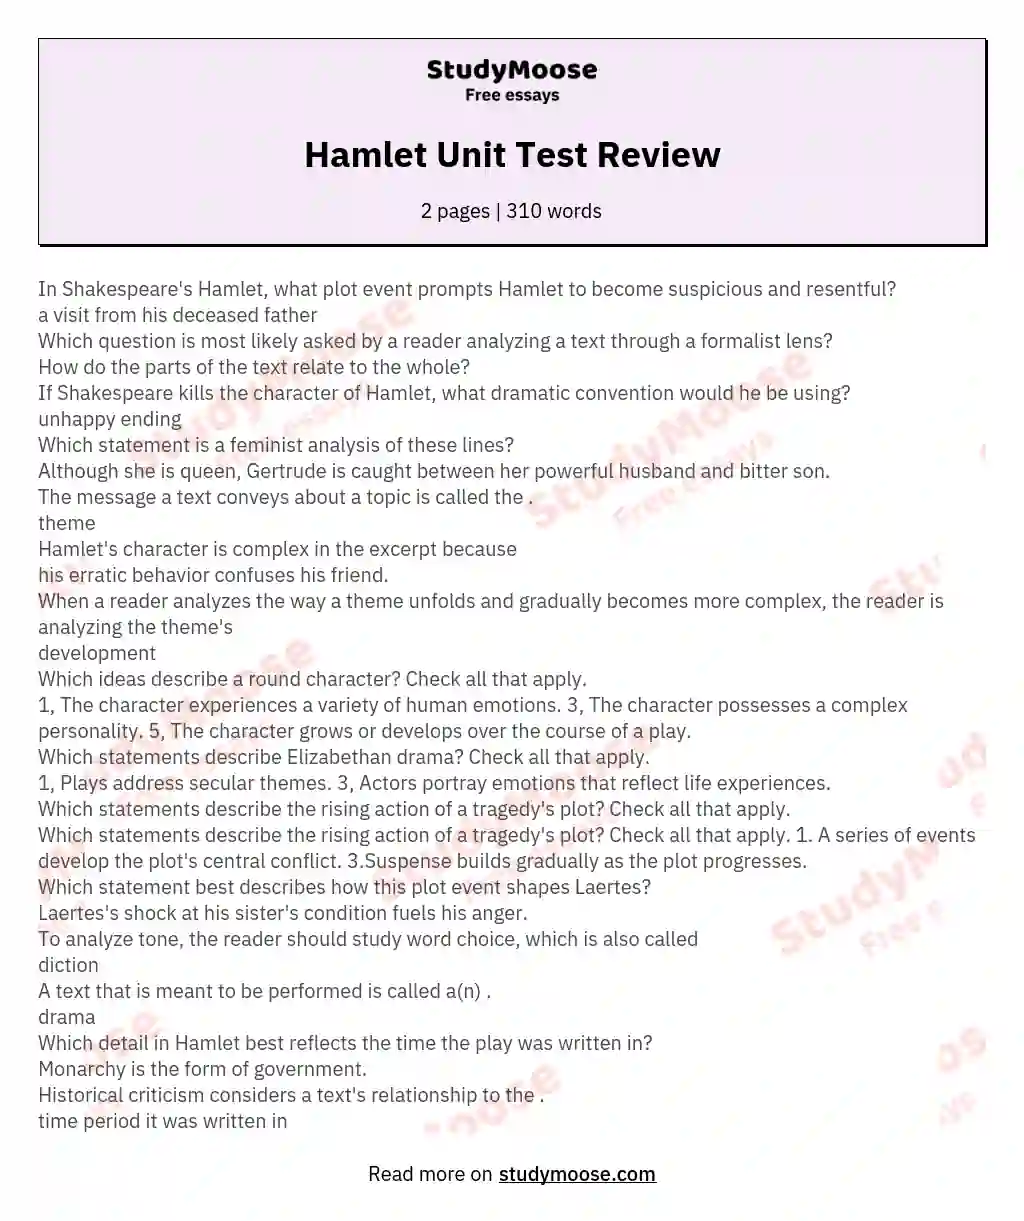 Hamlet Unit Test Review essay